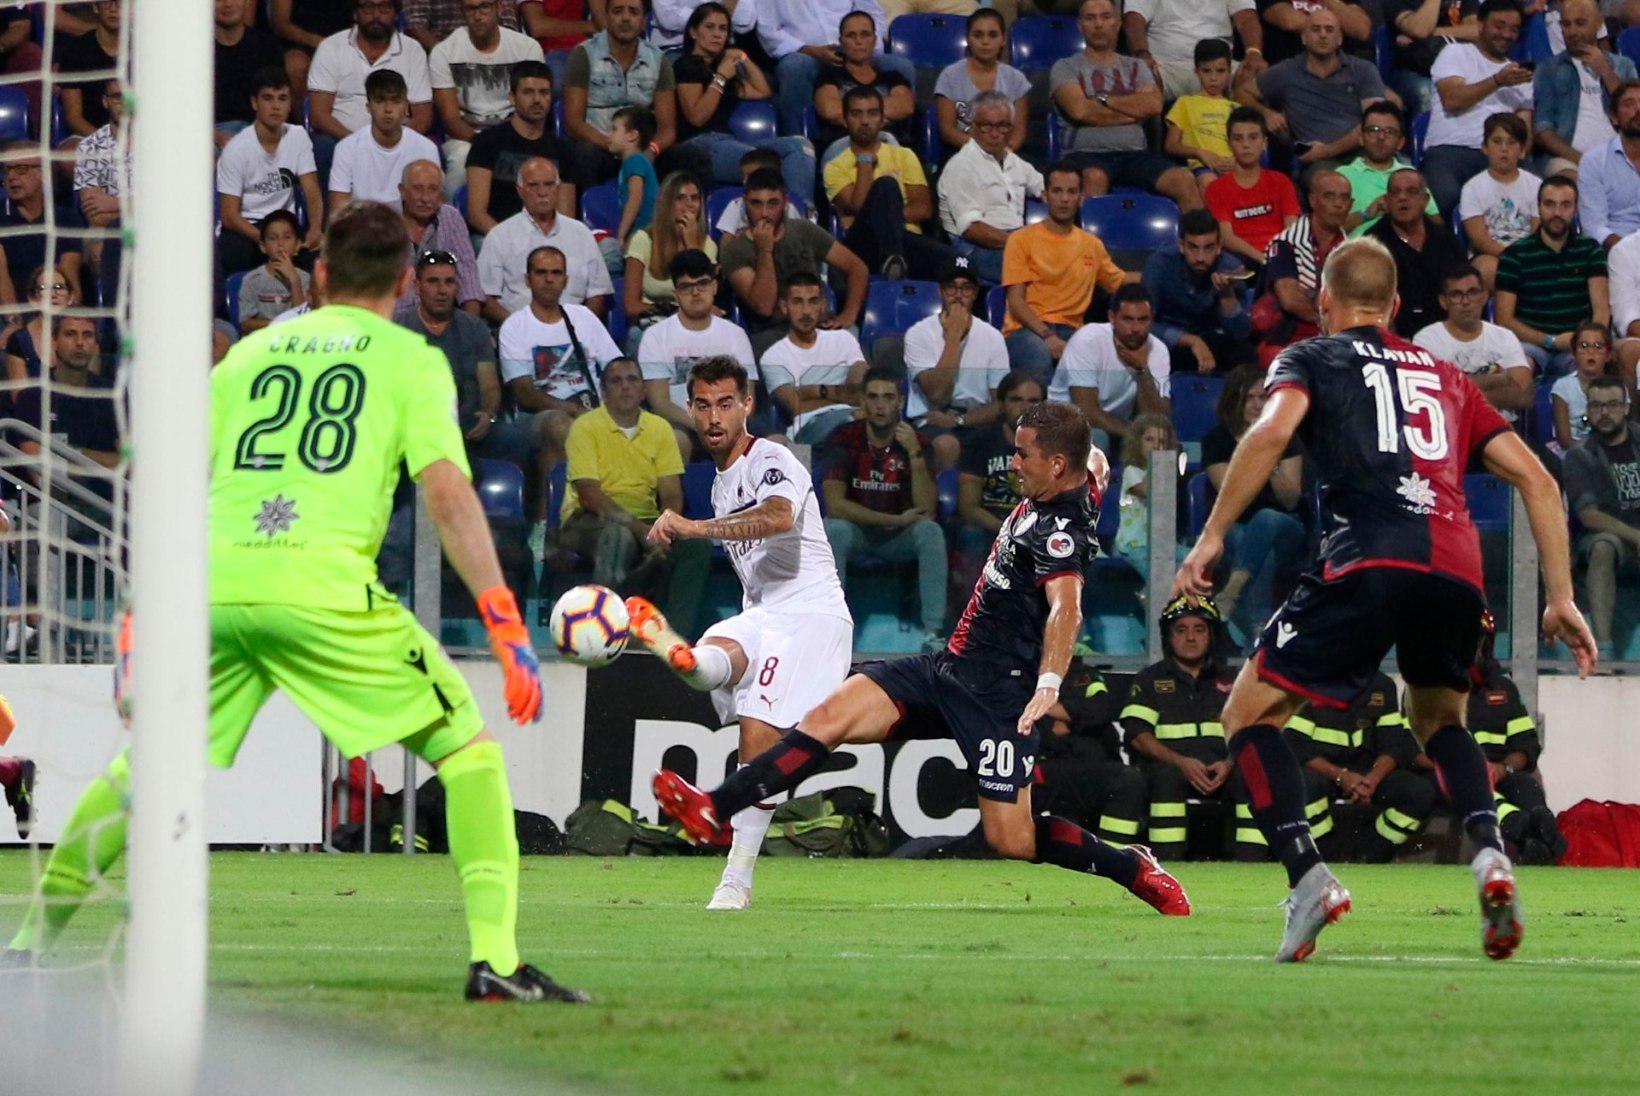 NII SEE JUHTUS | Cagliari sai Milani vastu punkti kätte, kergejõustikus purustati maailmarekordeid